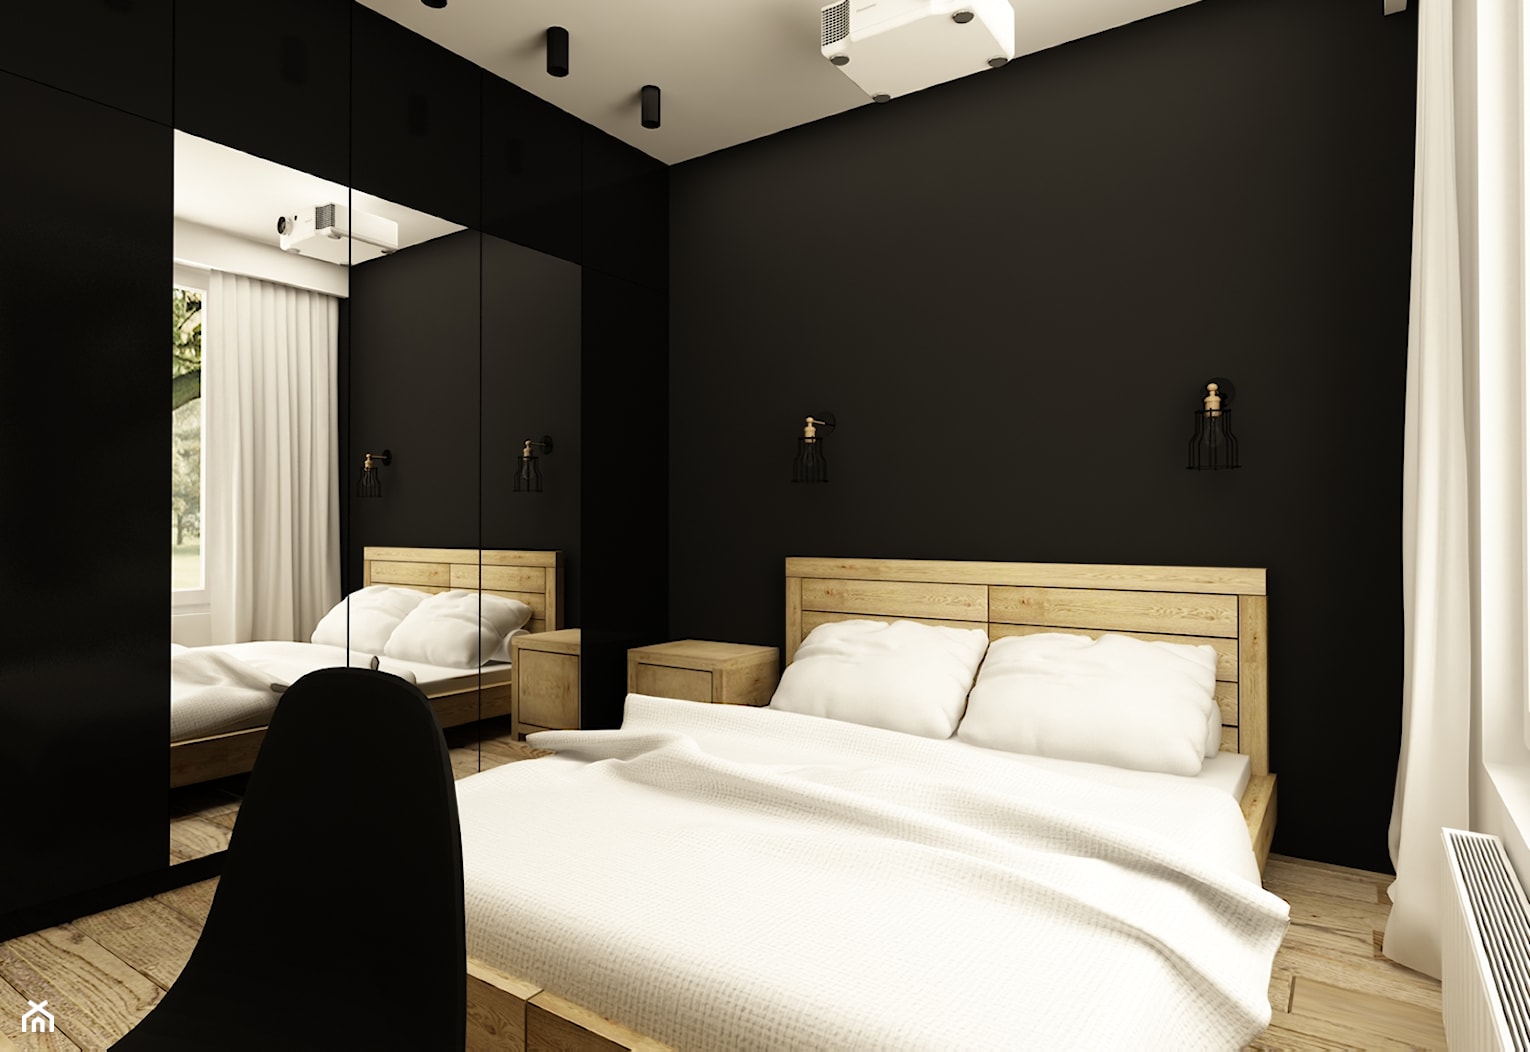 SOFT INDUSTRIAL NA BEMOWIE - Średnia czarna sypialnia, styl industrialny - zdjęcie od design me too - Homebook